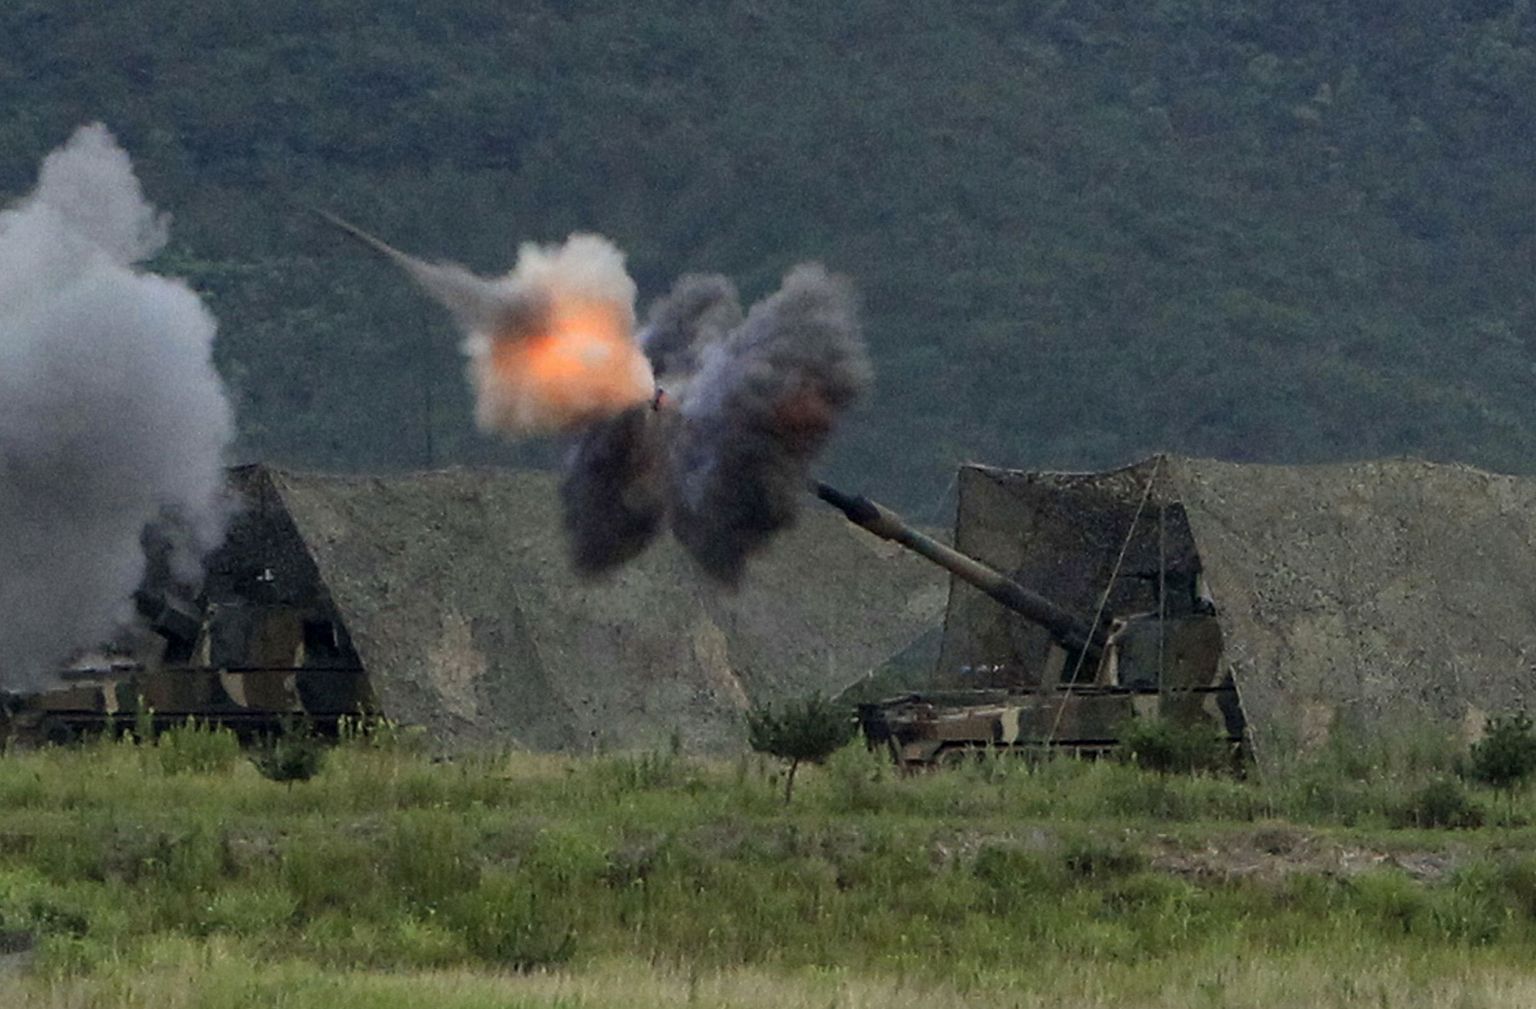 Lõuna-Korea liikursuurtükid K9 Thunder (Kõu).